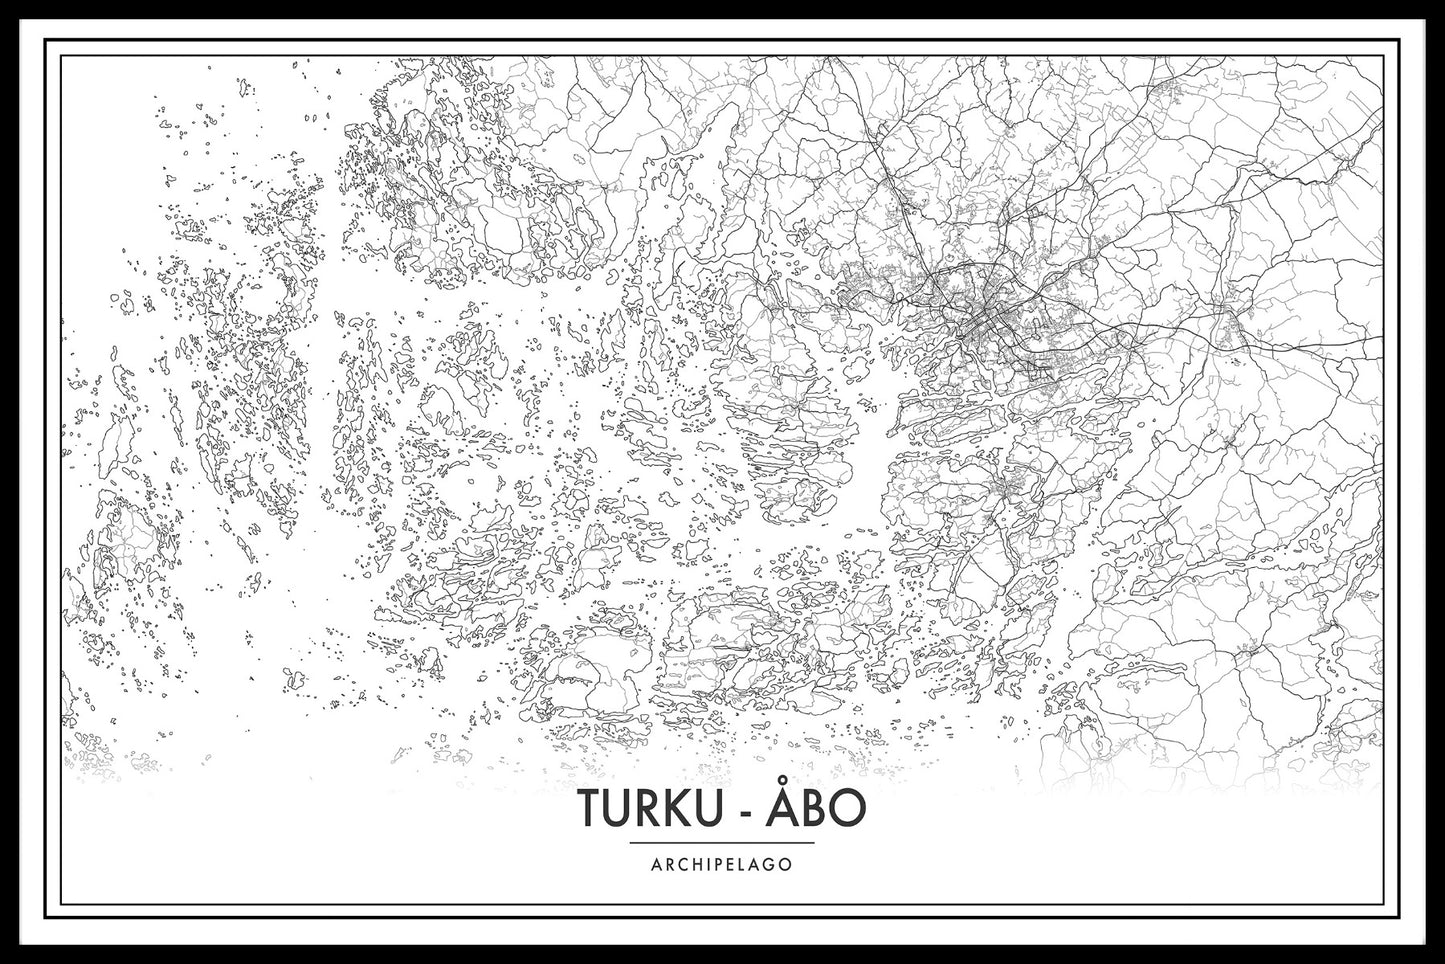  Karteneinträge für die Karte des Archipels von Turku